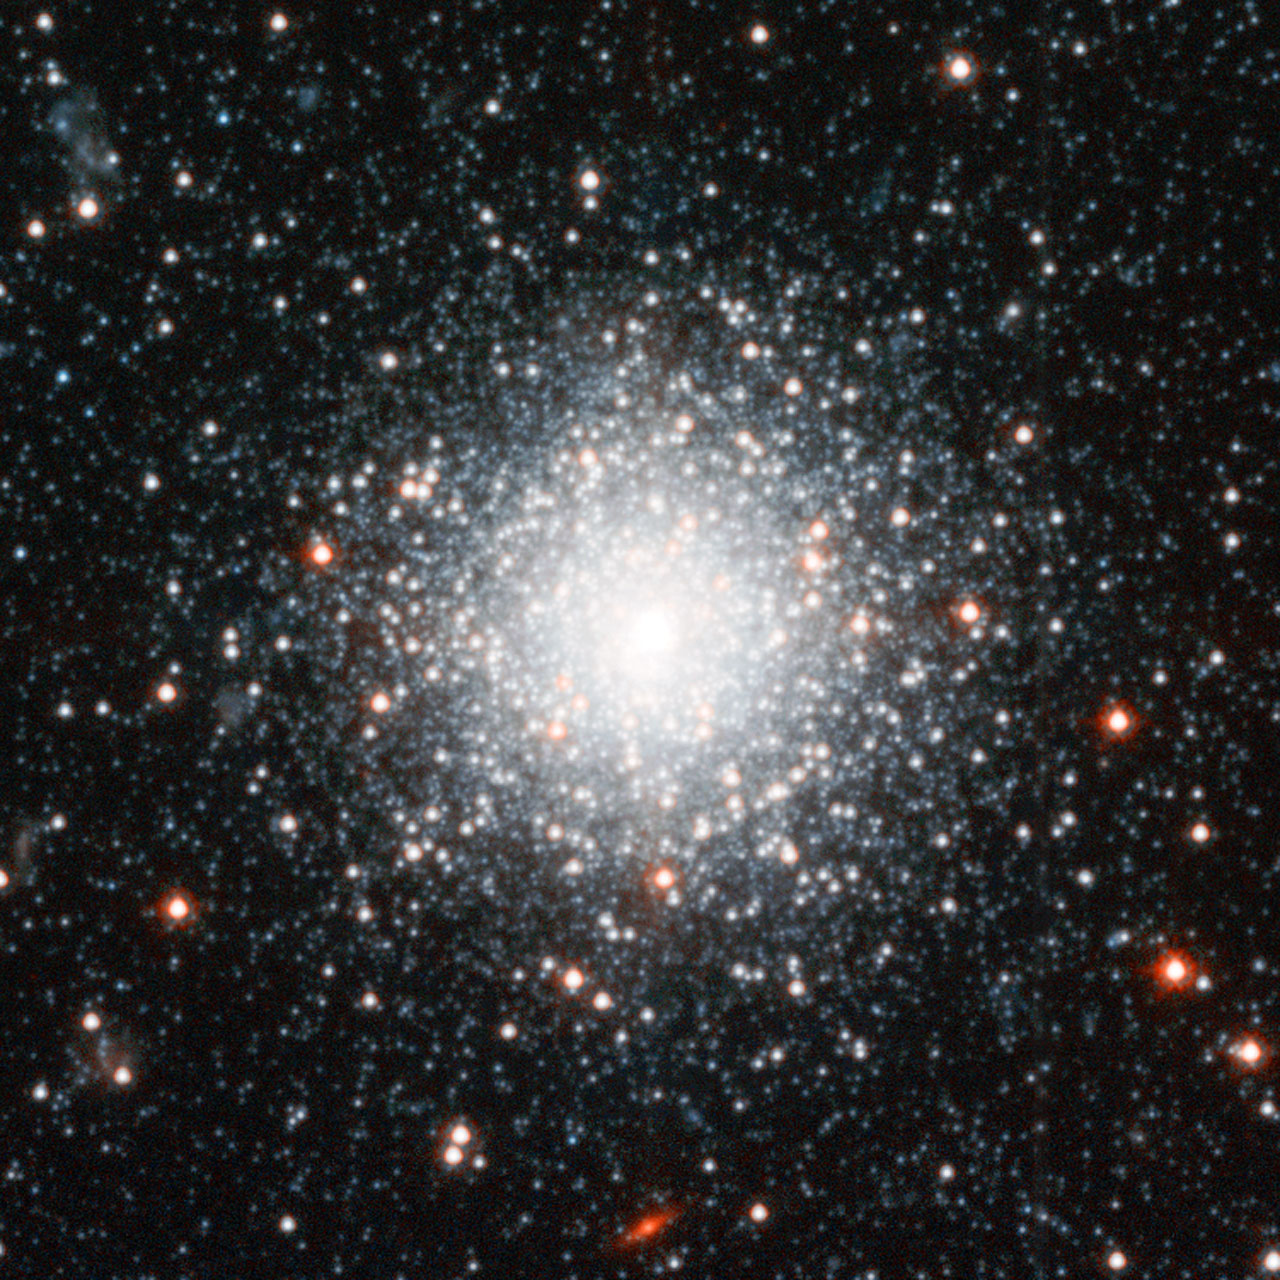 Star cluster in Andromeda's halo